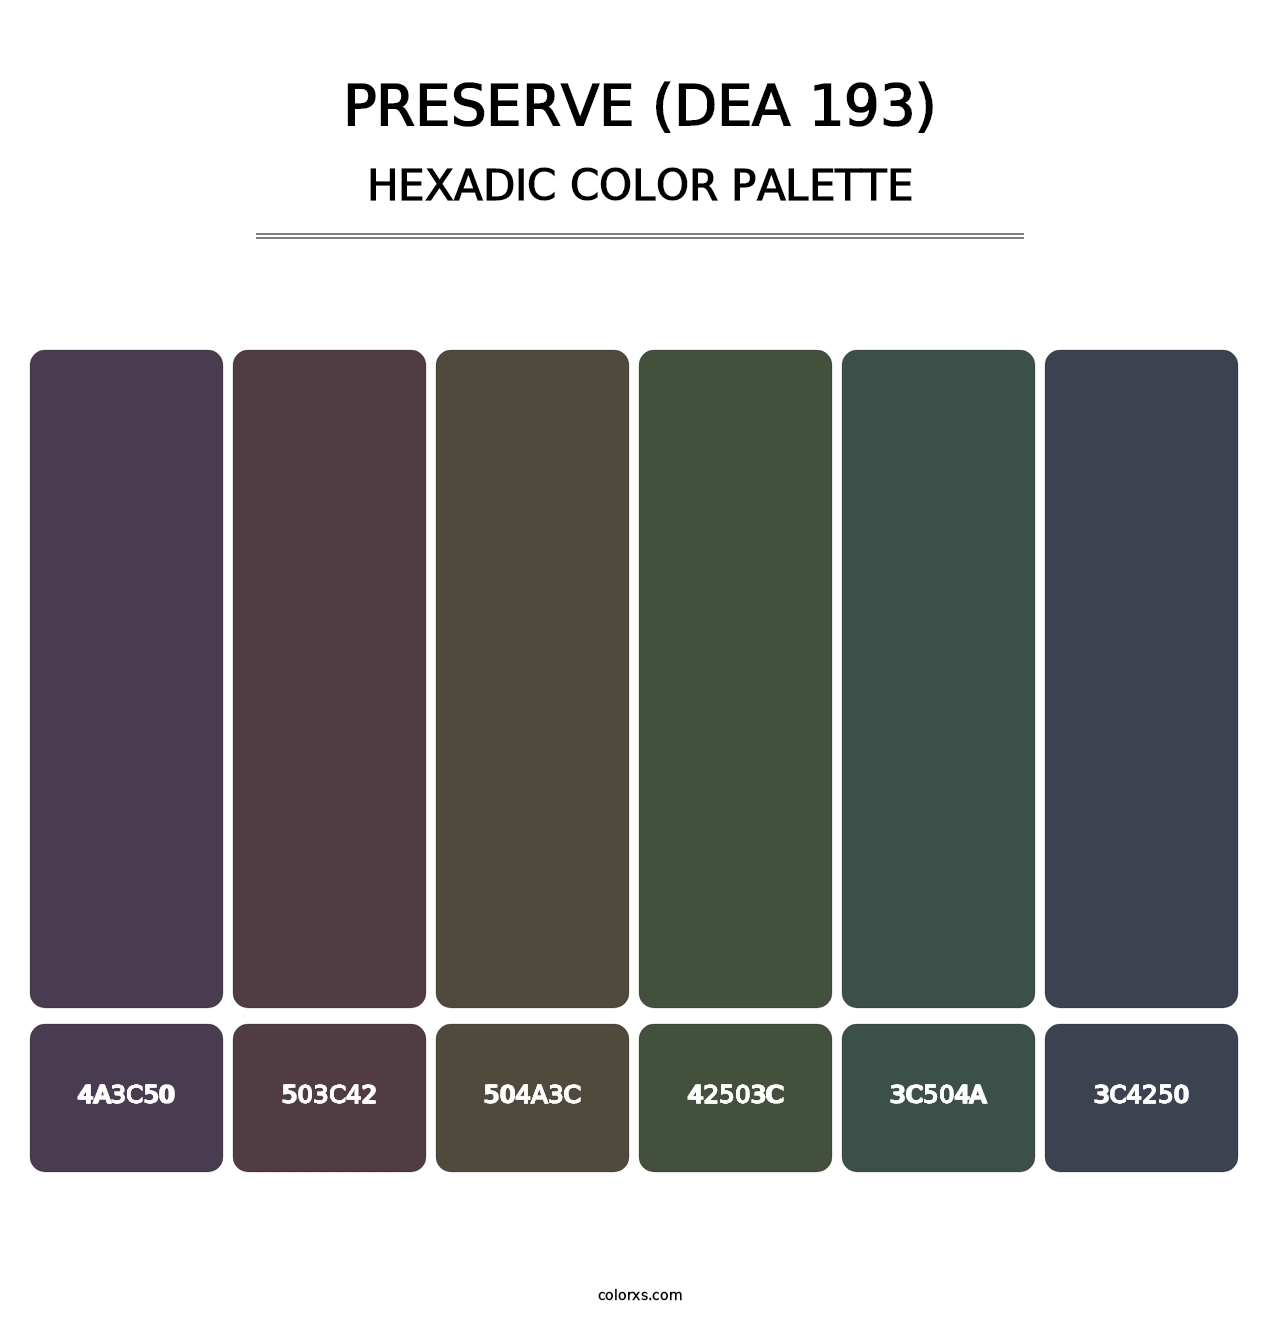 Preserve (DEA 193) - Hexadic Color Palette